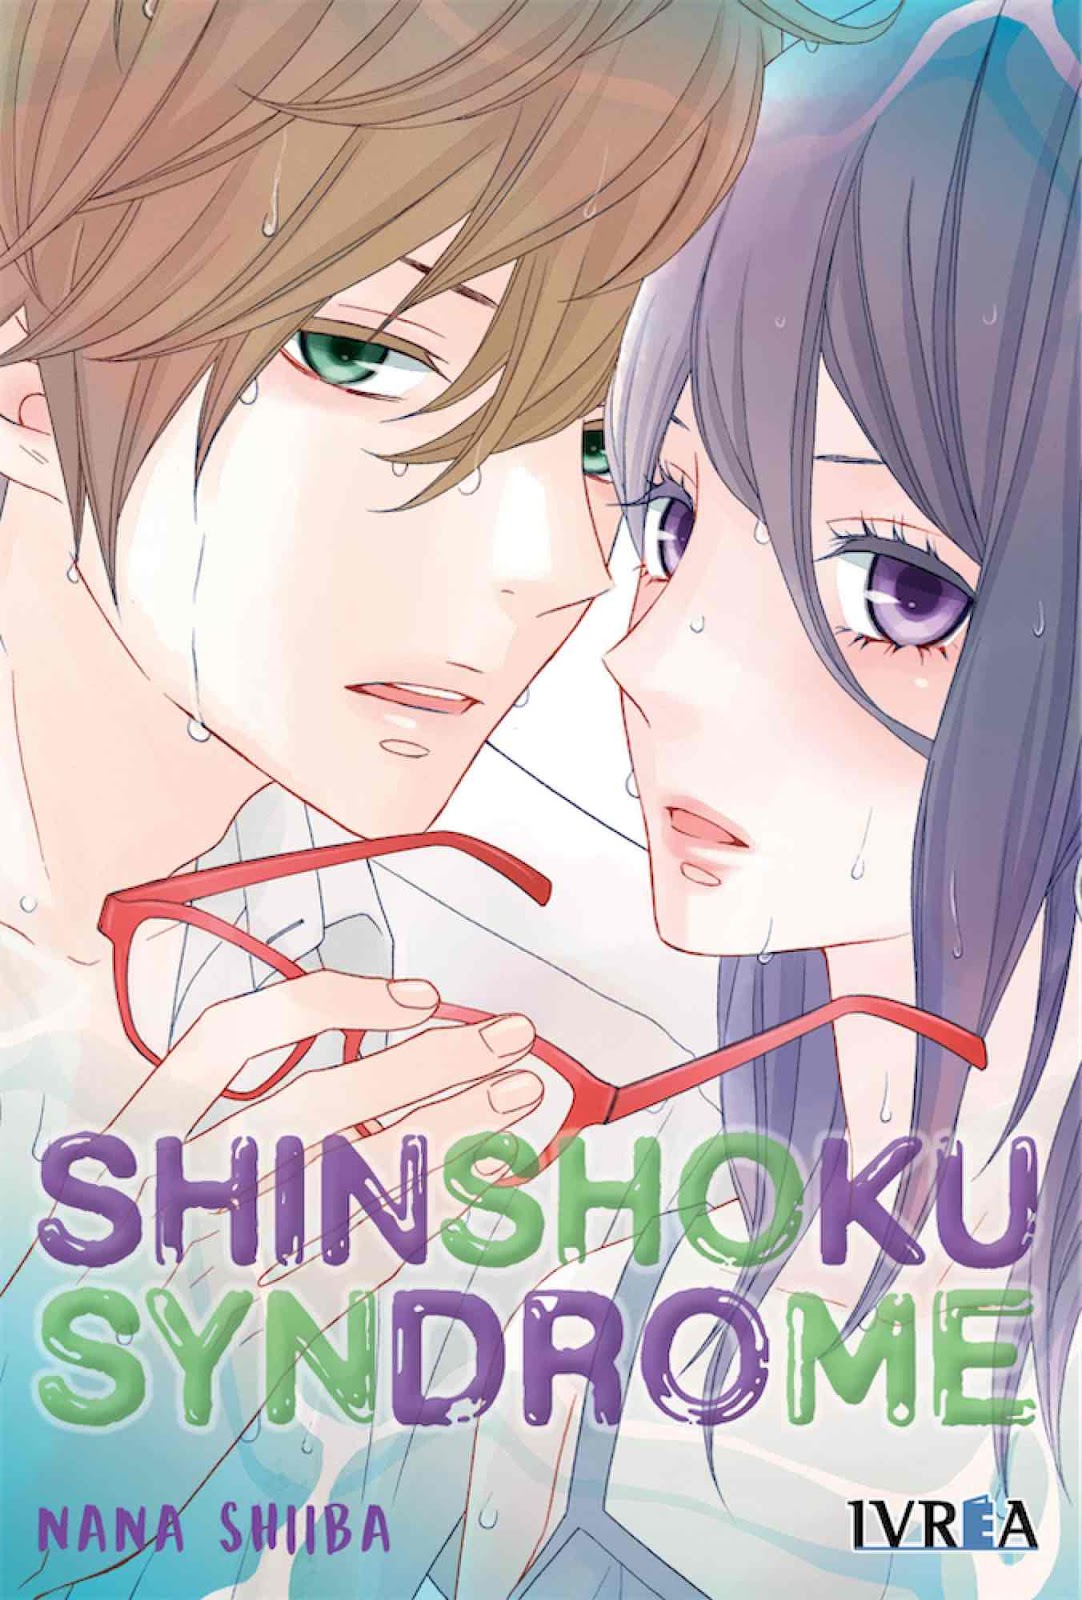 Manga Review De Shinshoku Syndrome De Nana Shiiba Ivrea